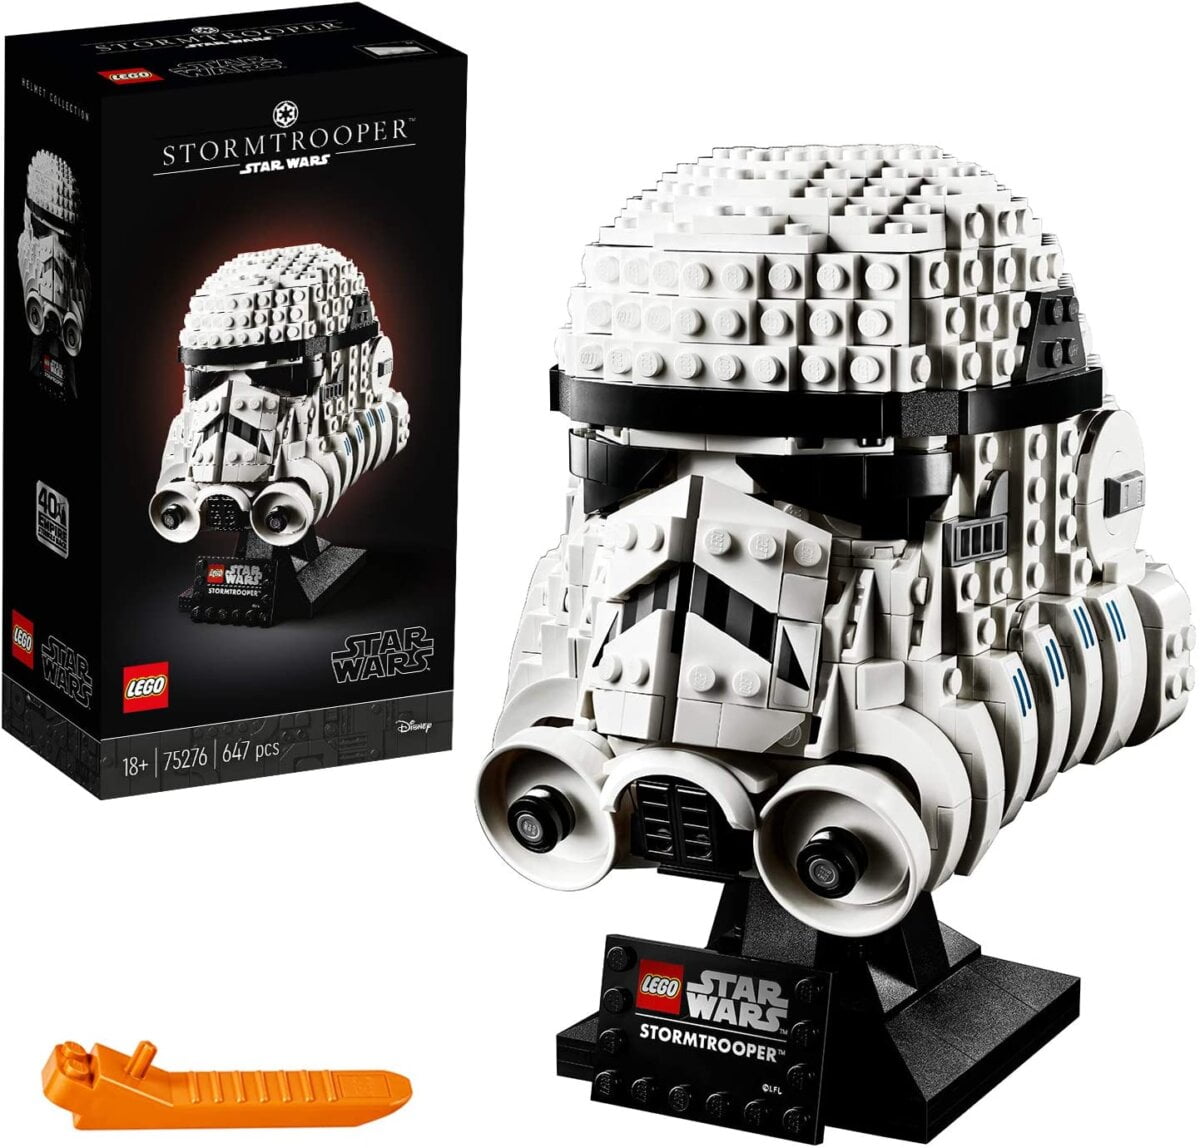  LEGO Star Wars - Casque de Stormtrooper sur un présentoir